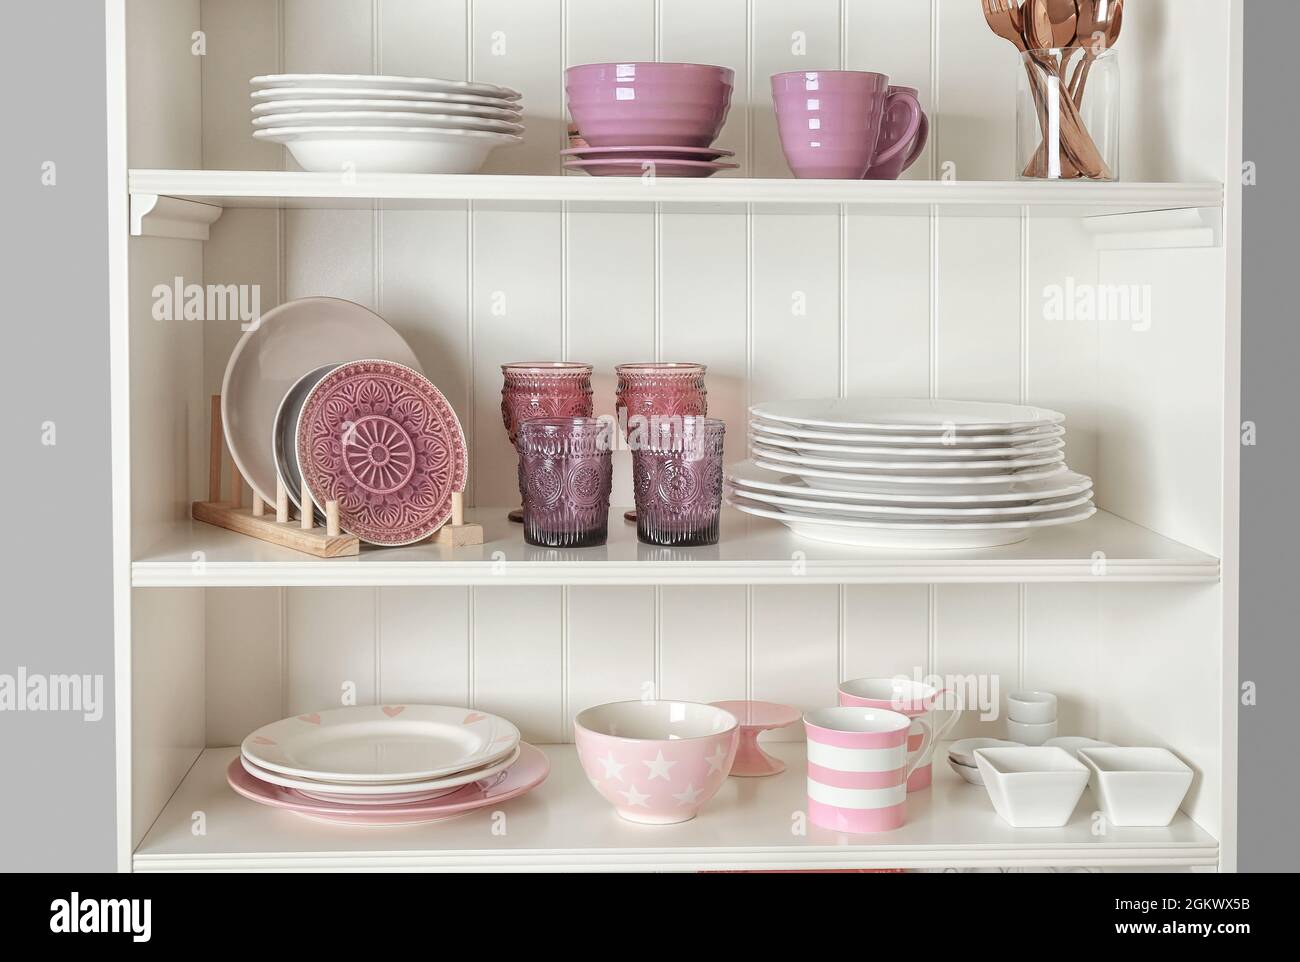 Rangement cuisine avec vaisselle couleur sur fond de mur Photo Stock - Alamy